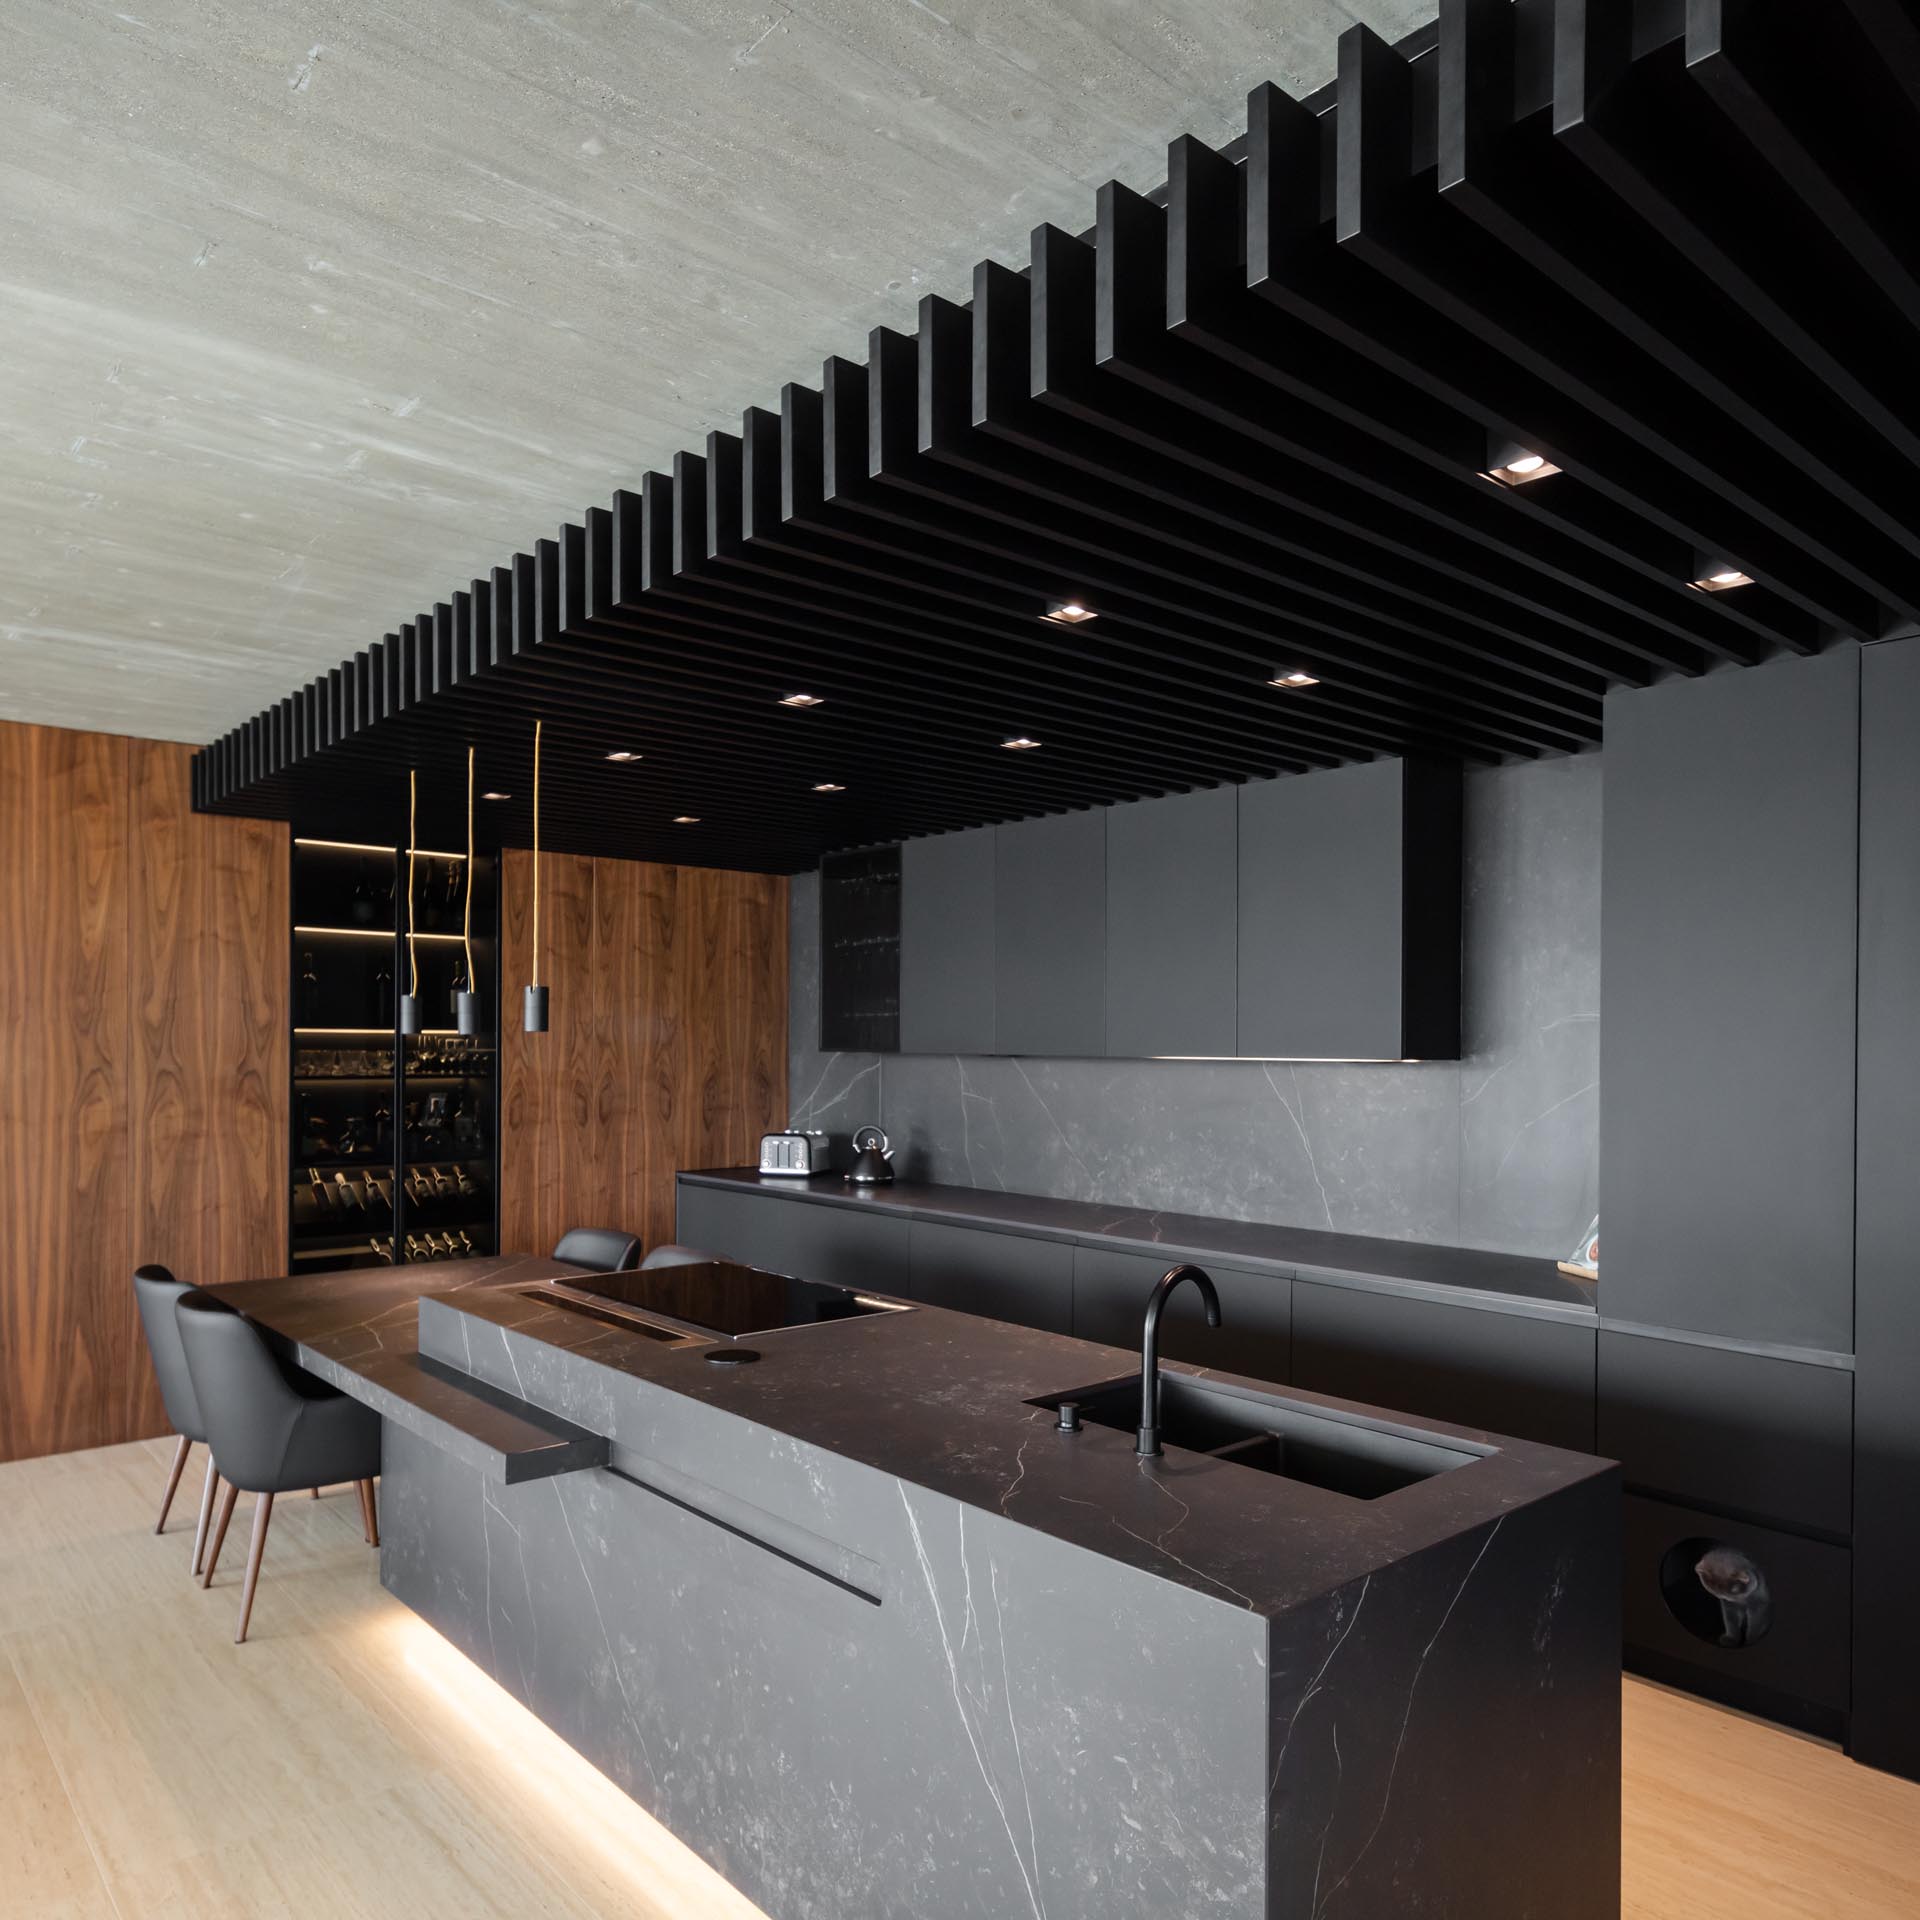 Современная кухня со стеной из матовых черных минималистичных шкафов (в которой также есть небольшая дверца для доступа к ящику для кошачьих туалетов), а также потолок из черного дерева с равномерно распределенным освещением между планками.